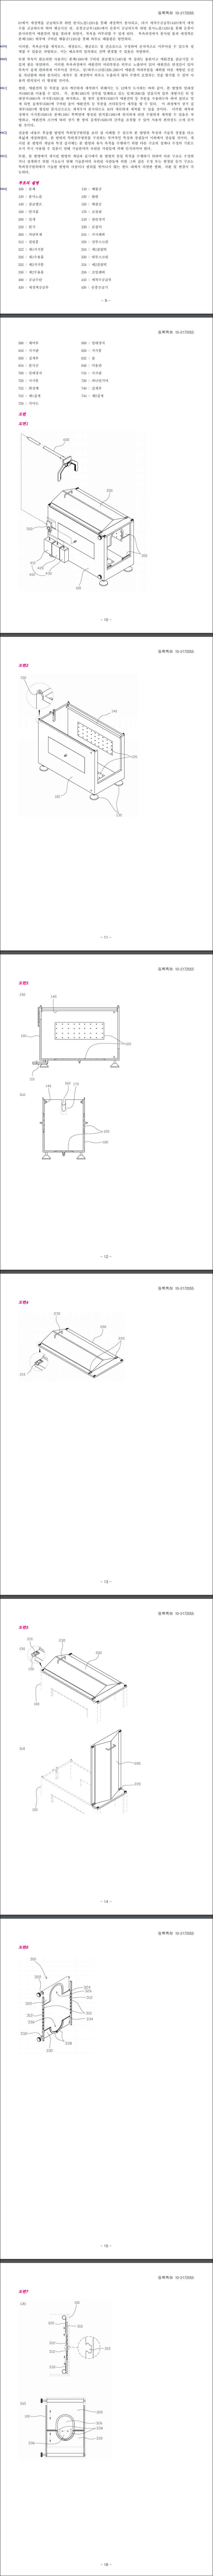 특허 제10-2172055호(목욕 기능을 구비한 애완견 하우스, 김동환, 